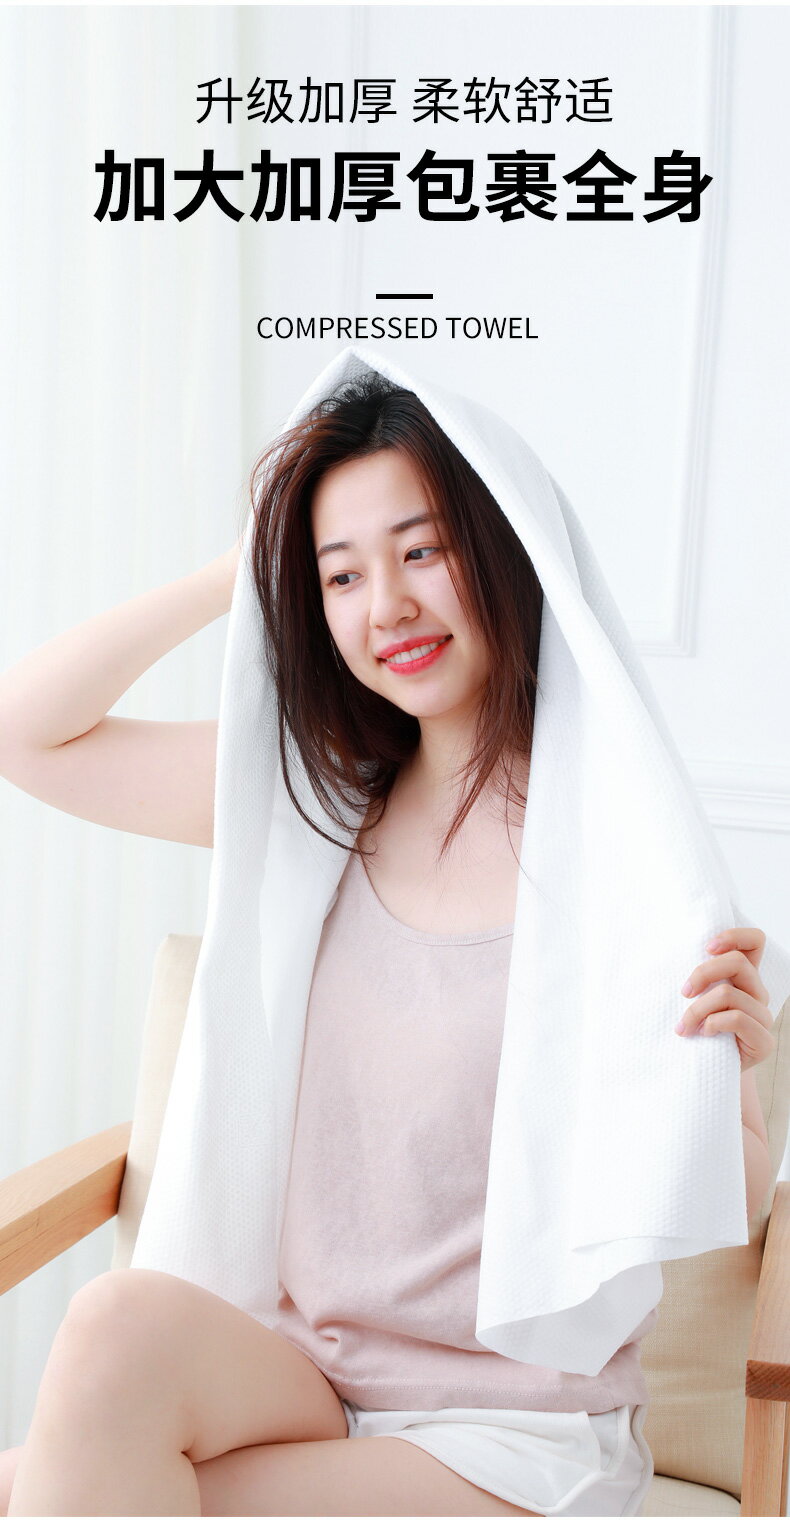 日本ITO一次性浴巾旅行干純棉毛巾洗浴用的加厚大號旅行酒店用品 6